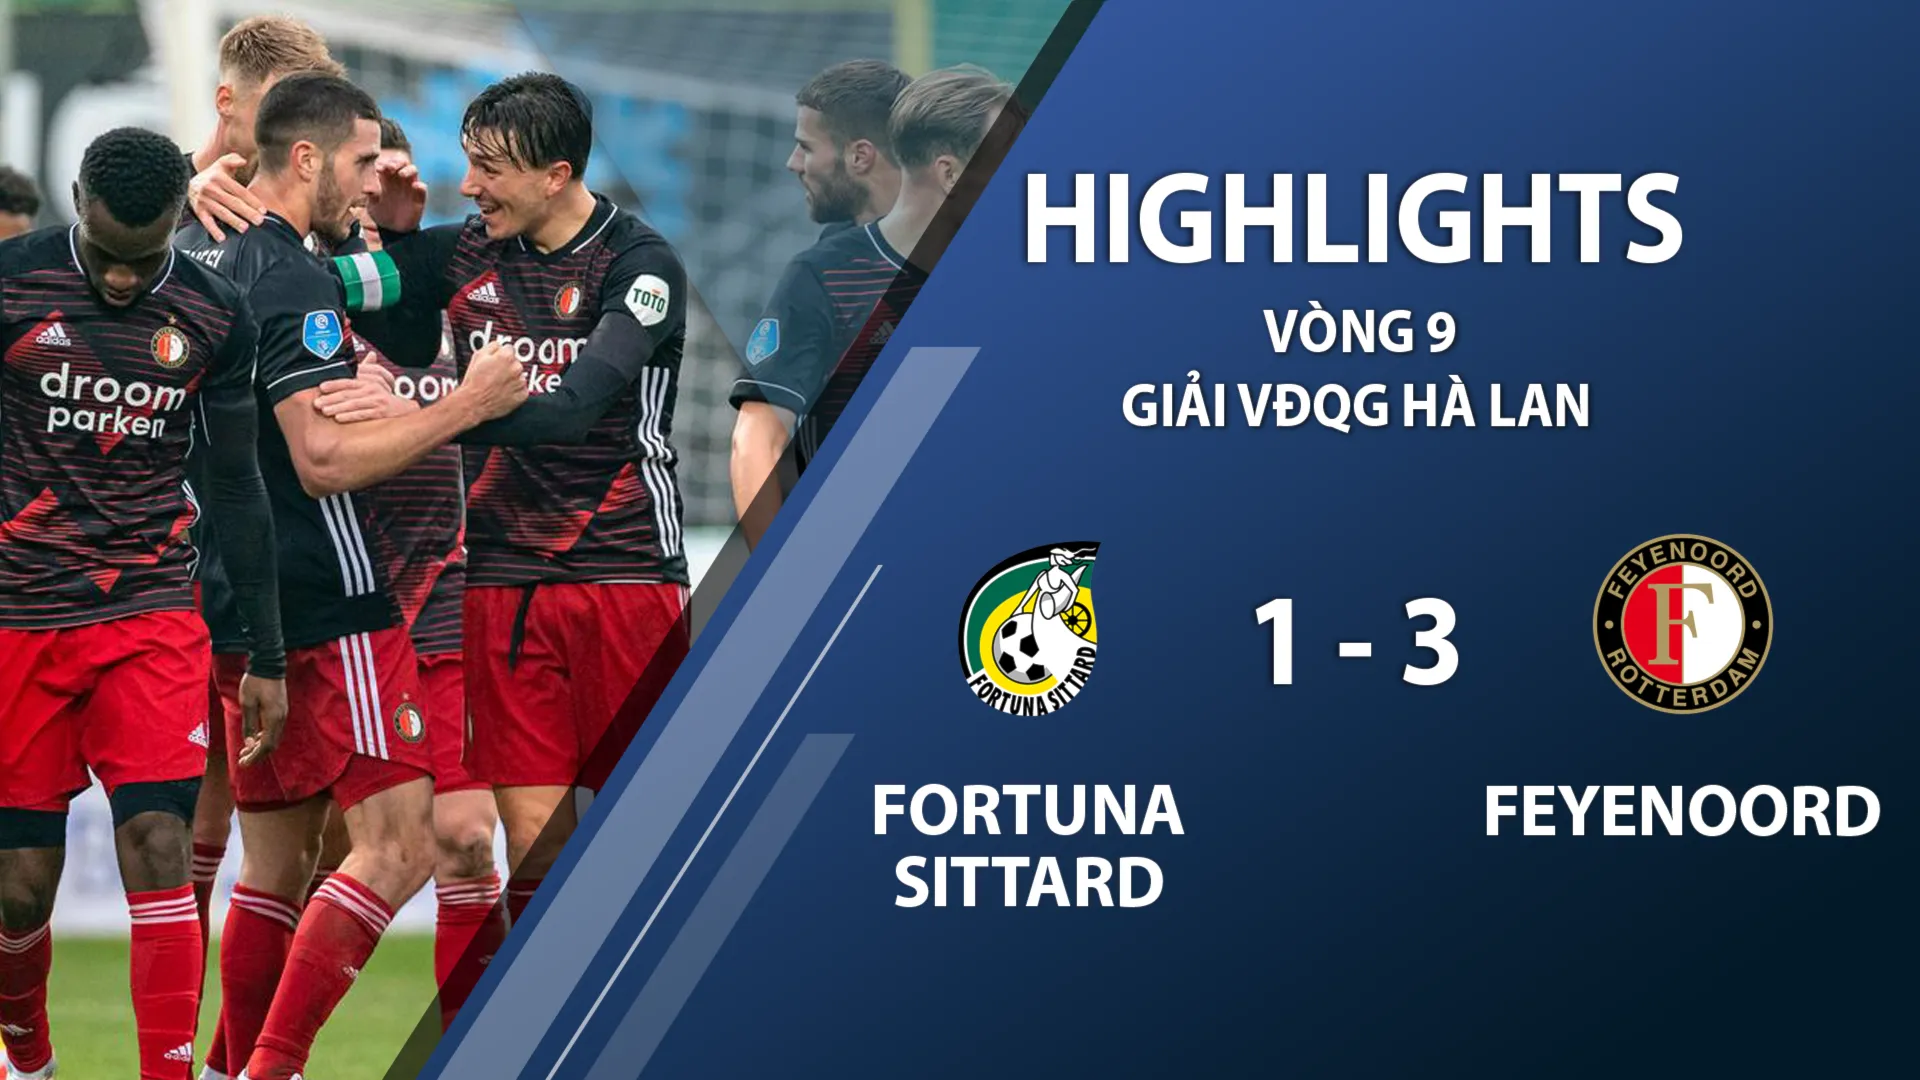 Highlights Fortuna Sittard 1-3 Feyenoord (vòng 9 giải VĐQG Hà Lan 2020/21)